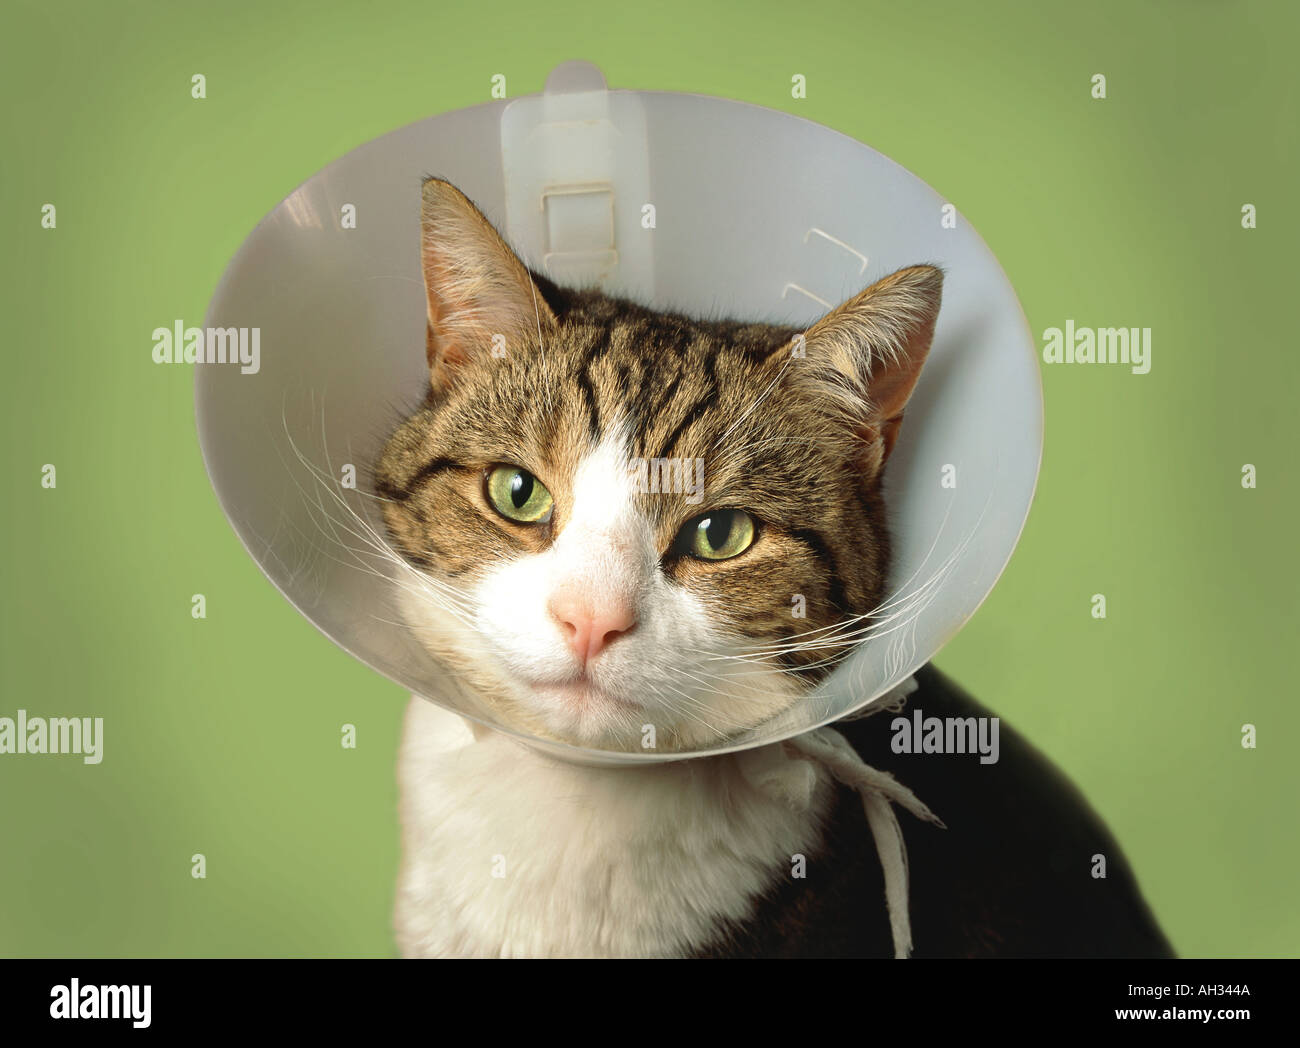 Katze ein Halsband tragen, nach einer operation Stockfotografie - Alamy